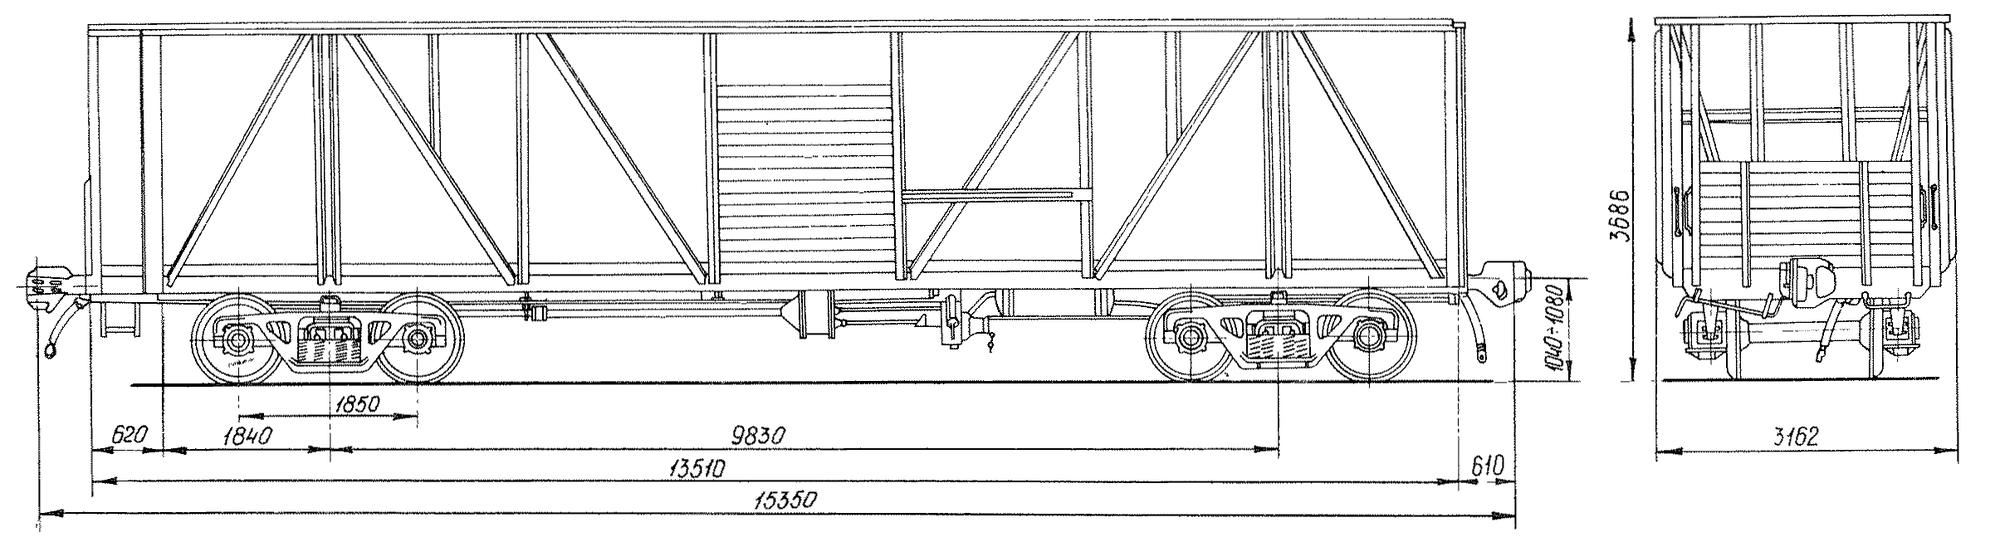 4-осный вагон для перевозки среднетоннажных контейнеров на базе крытого с тормозной площадкой